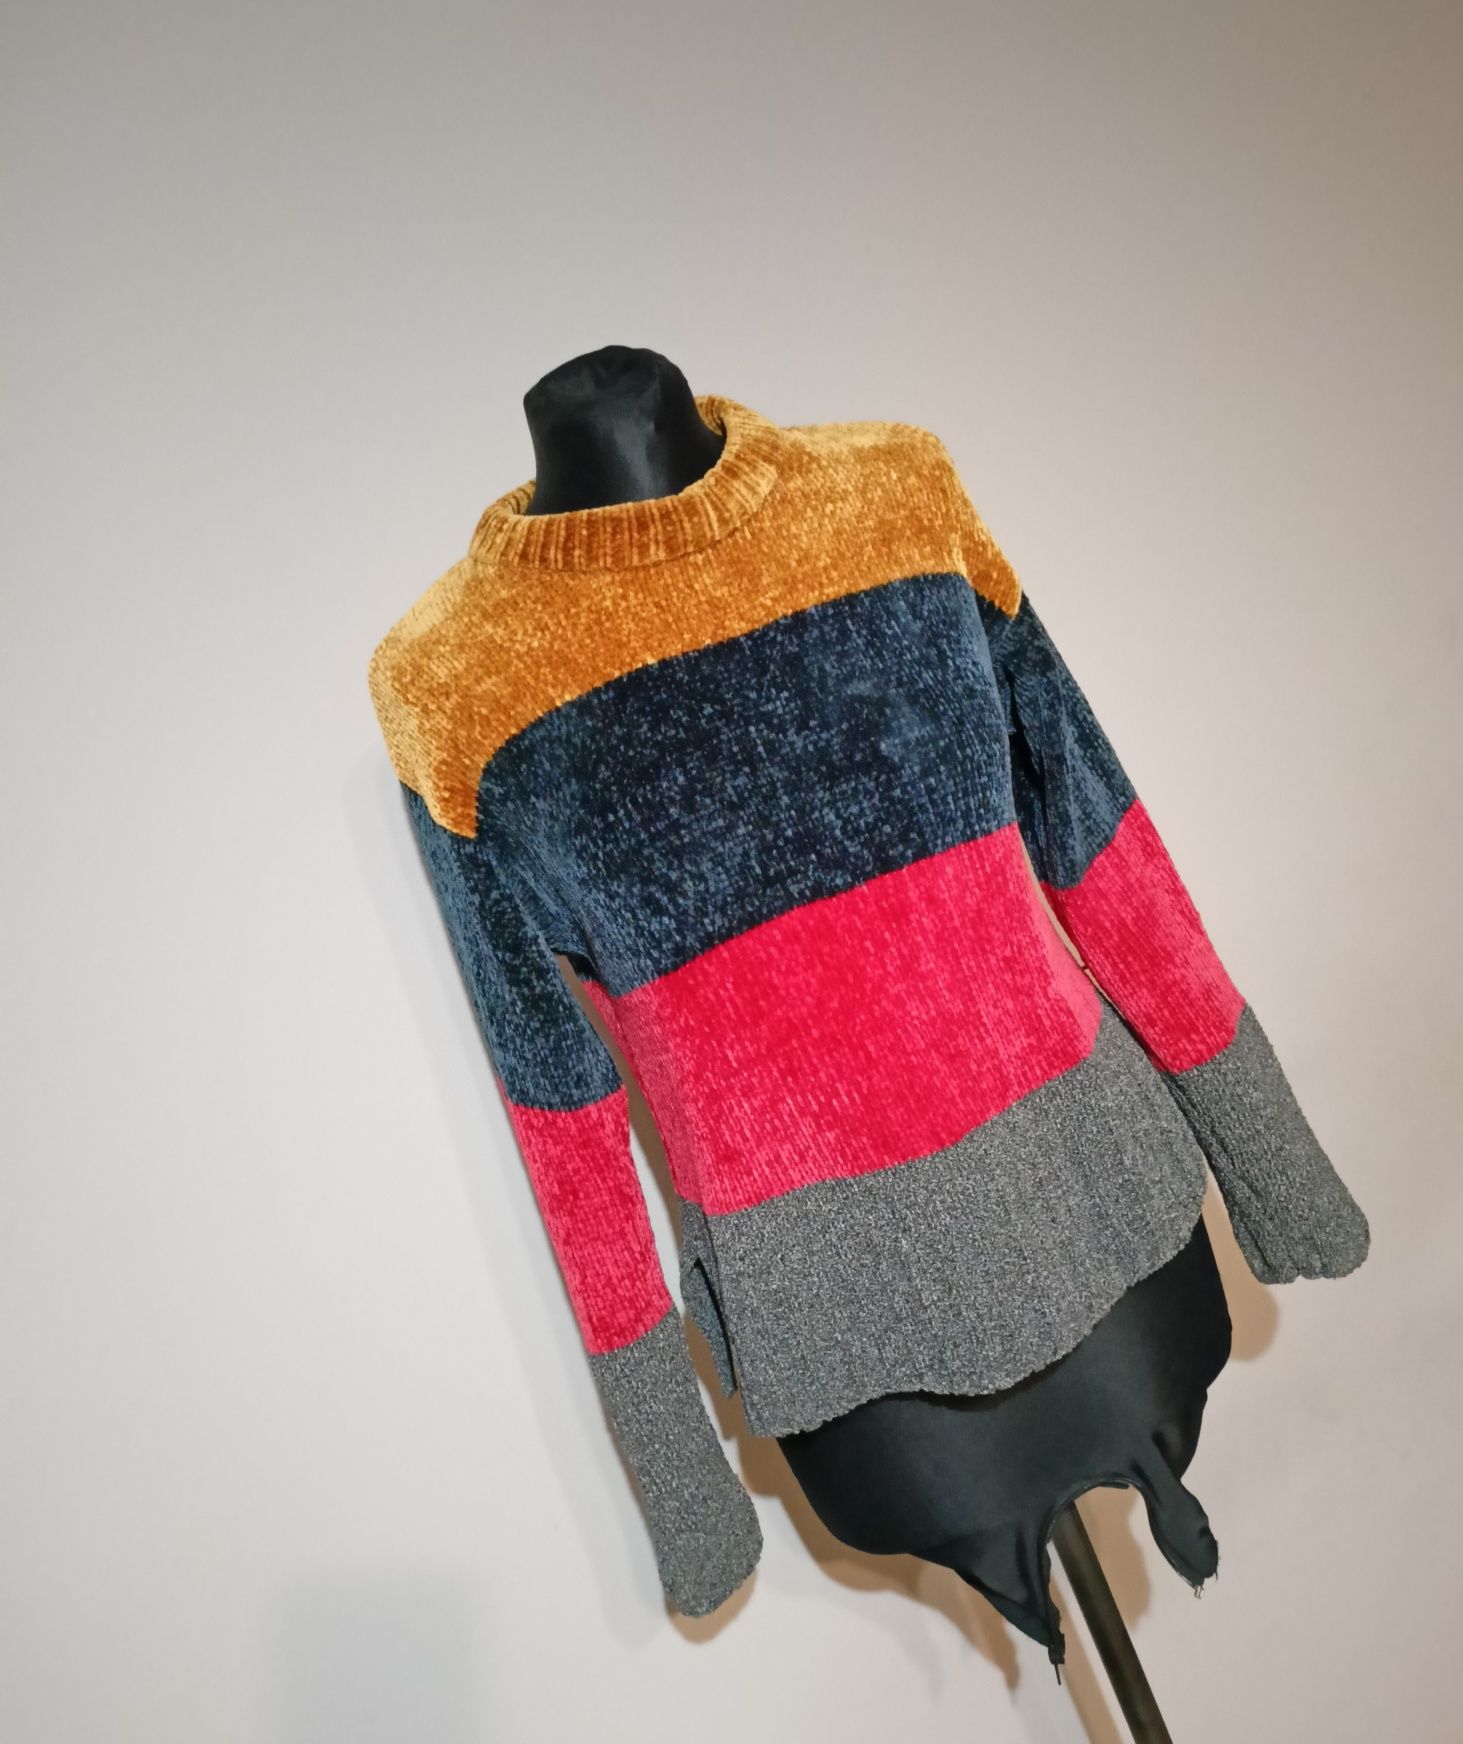 Kolorowy sweter damski rozmiar S/M, stan bardzo dobry, sweter w paski,